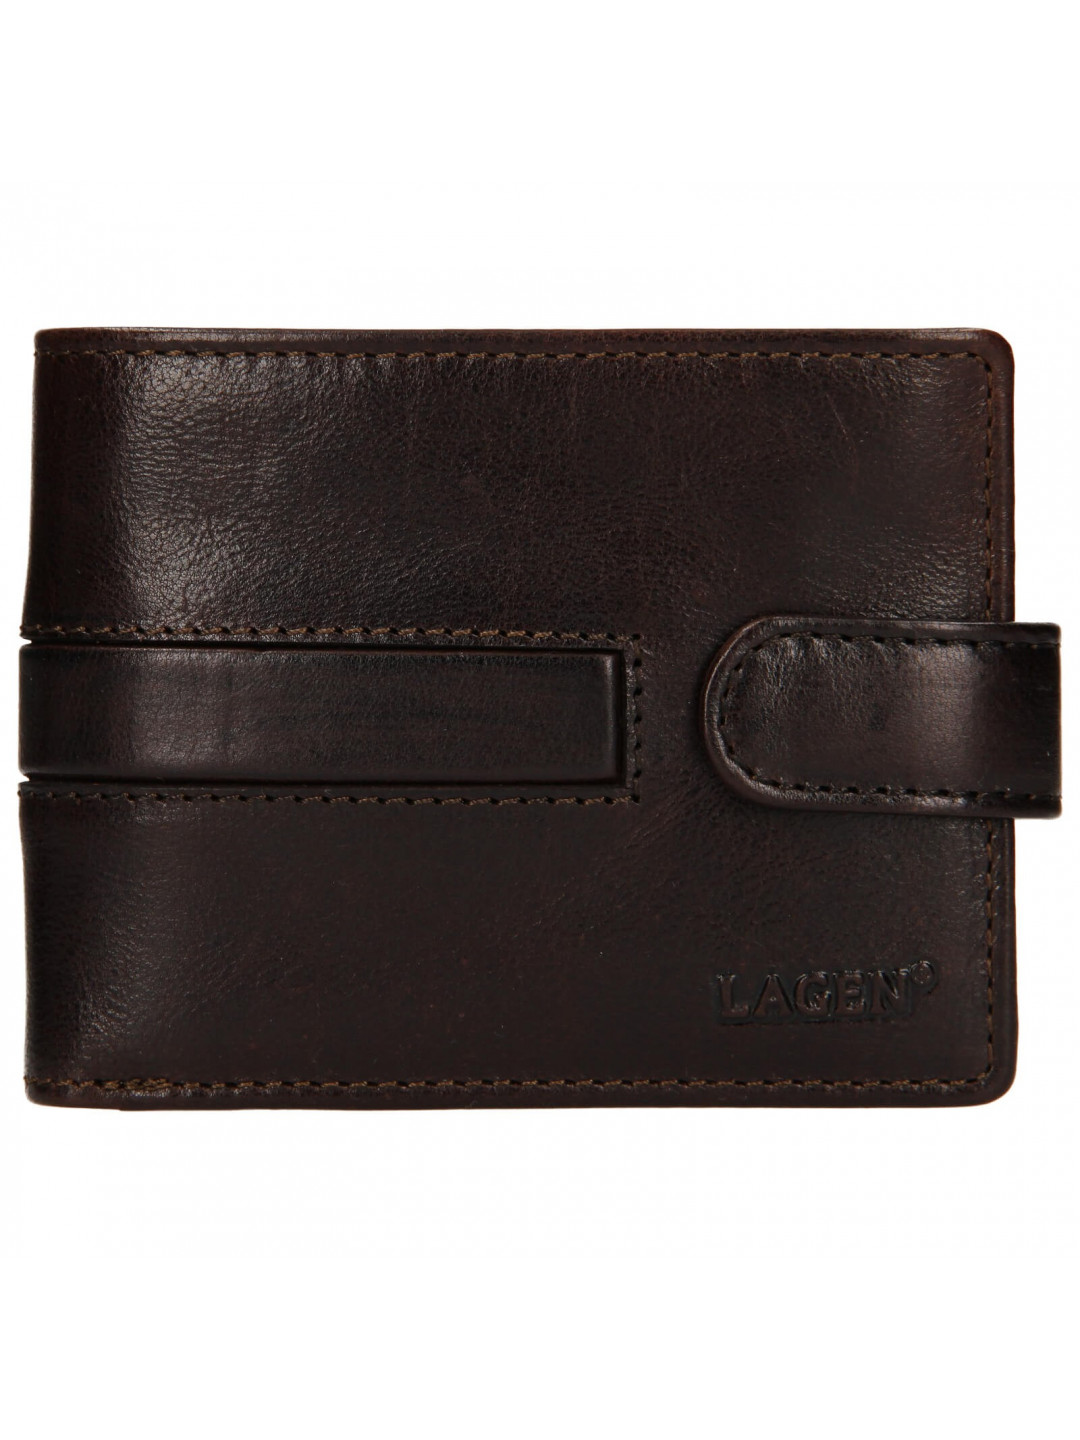 Pánská kožená peněženka Lagen Vander – tmavě hnědá